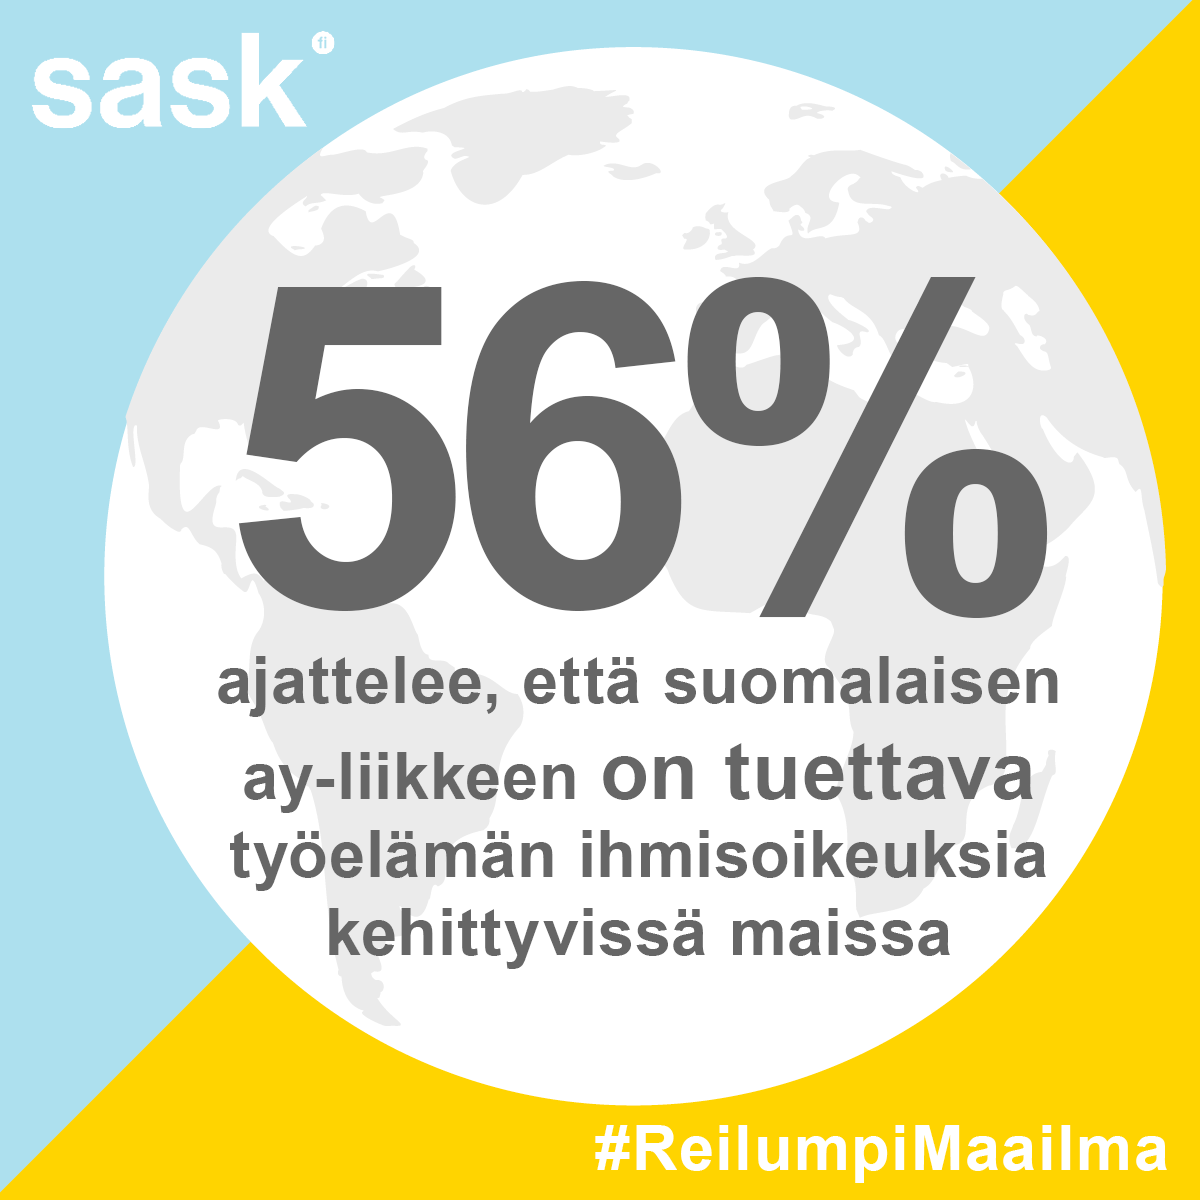 Kuvassa on maapallo turkoosi-keltaisella taustalla ja tekstillä: 56 % ajattelee, että suomalaisen ay-liikkeen on tuettava työelämän ihmisoikeuksia kehittyvissä maissa